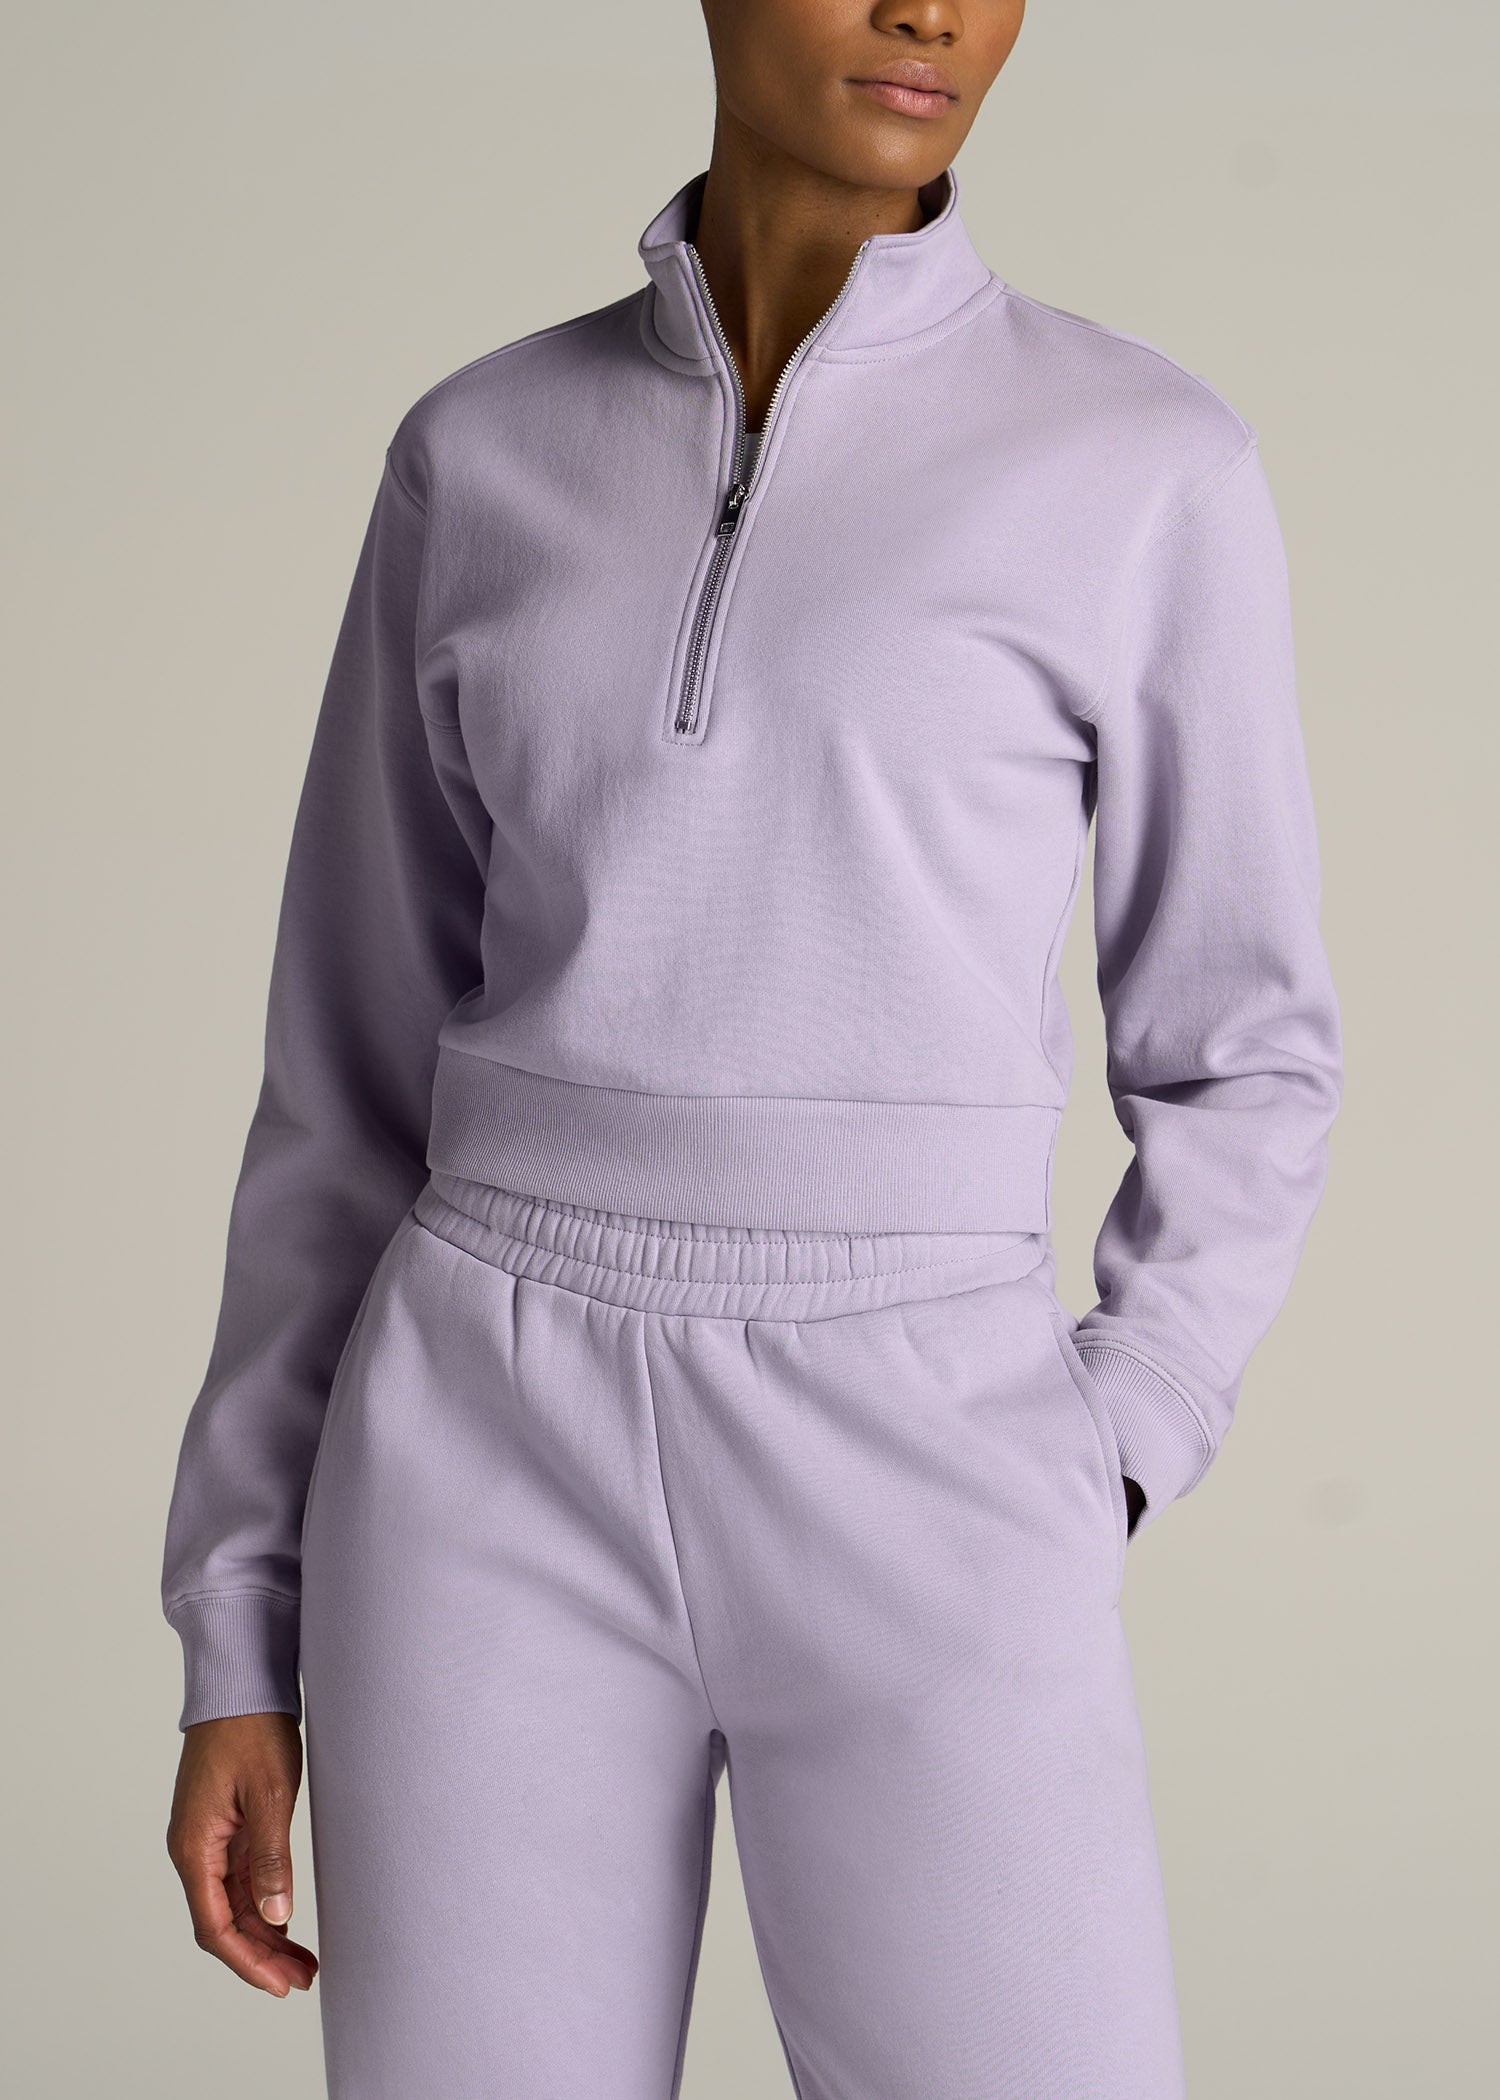 Wearever Cropped Half-Zip Women’s Tall Sweatshirt | American Tall